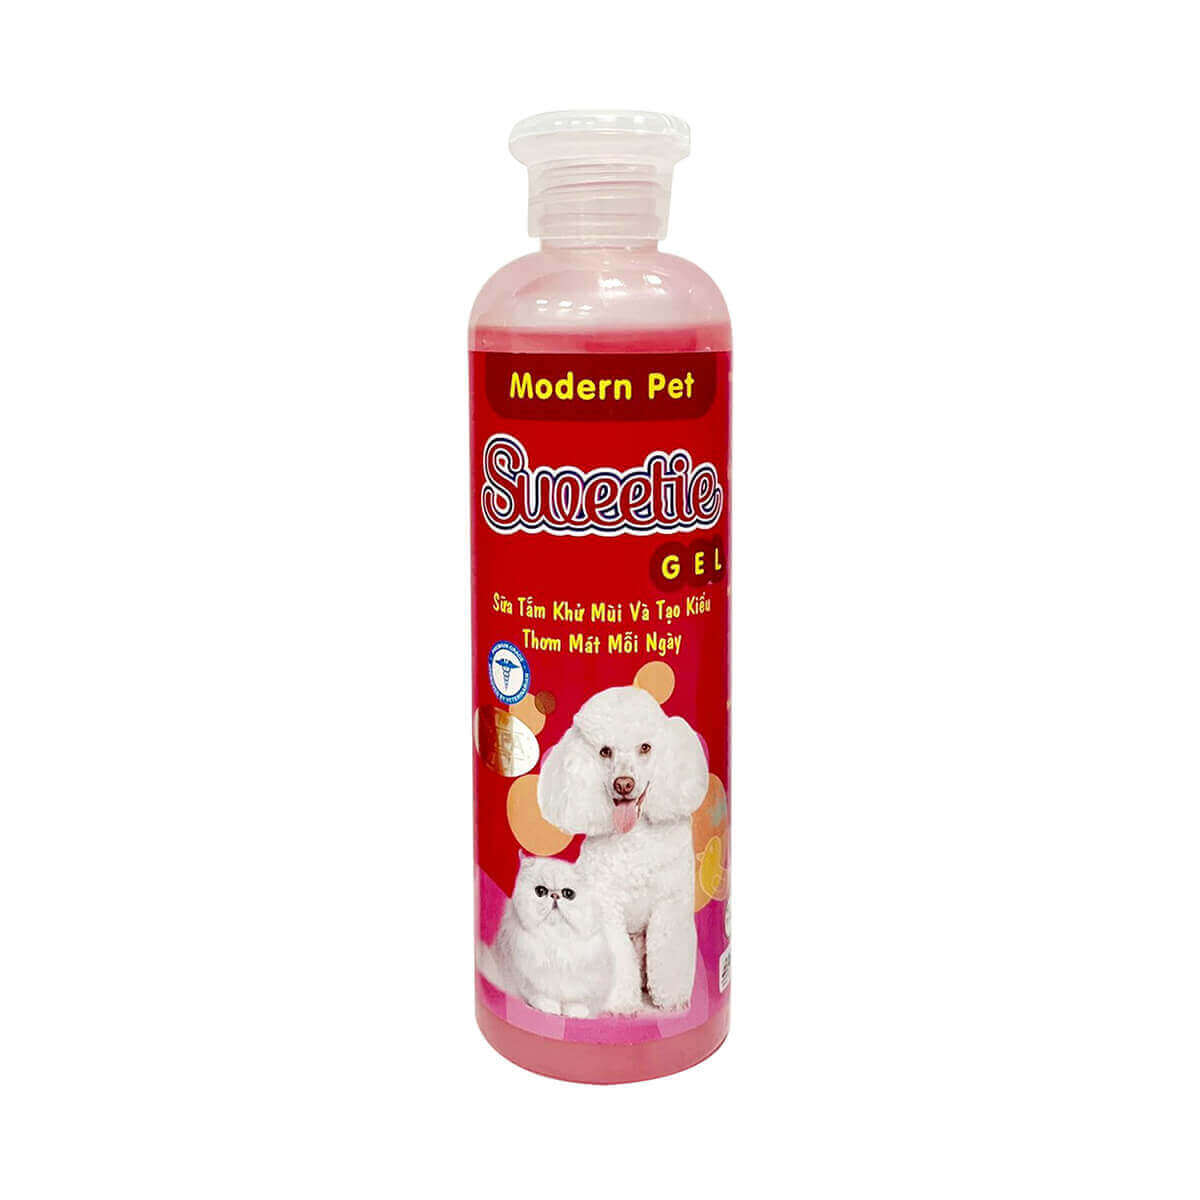 sữa tắm morden pet sweetie gel khử mùi tạo kiểu cho chó mèo